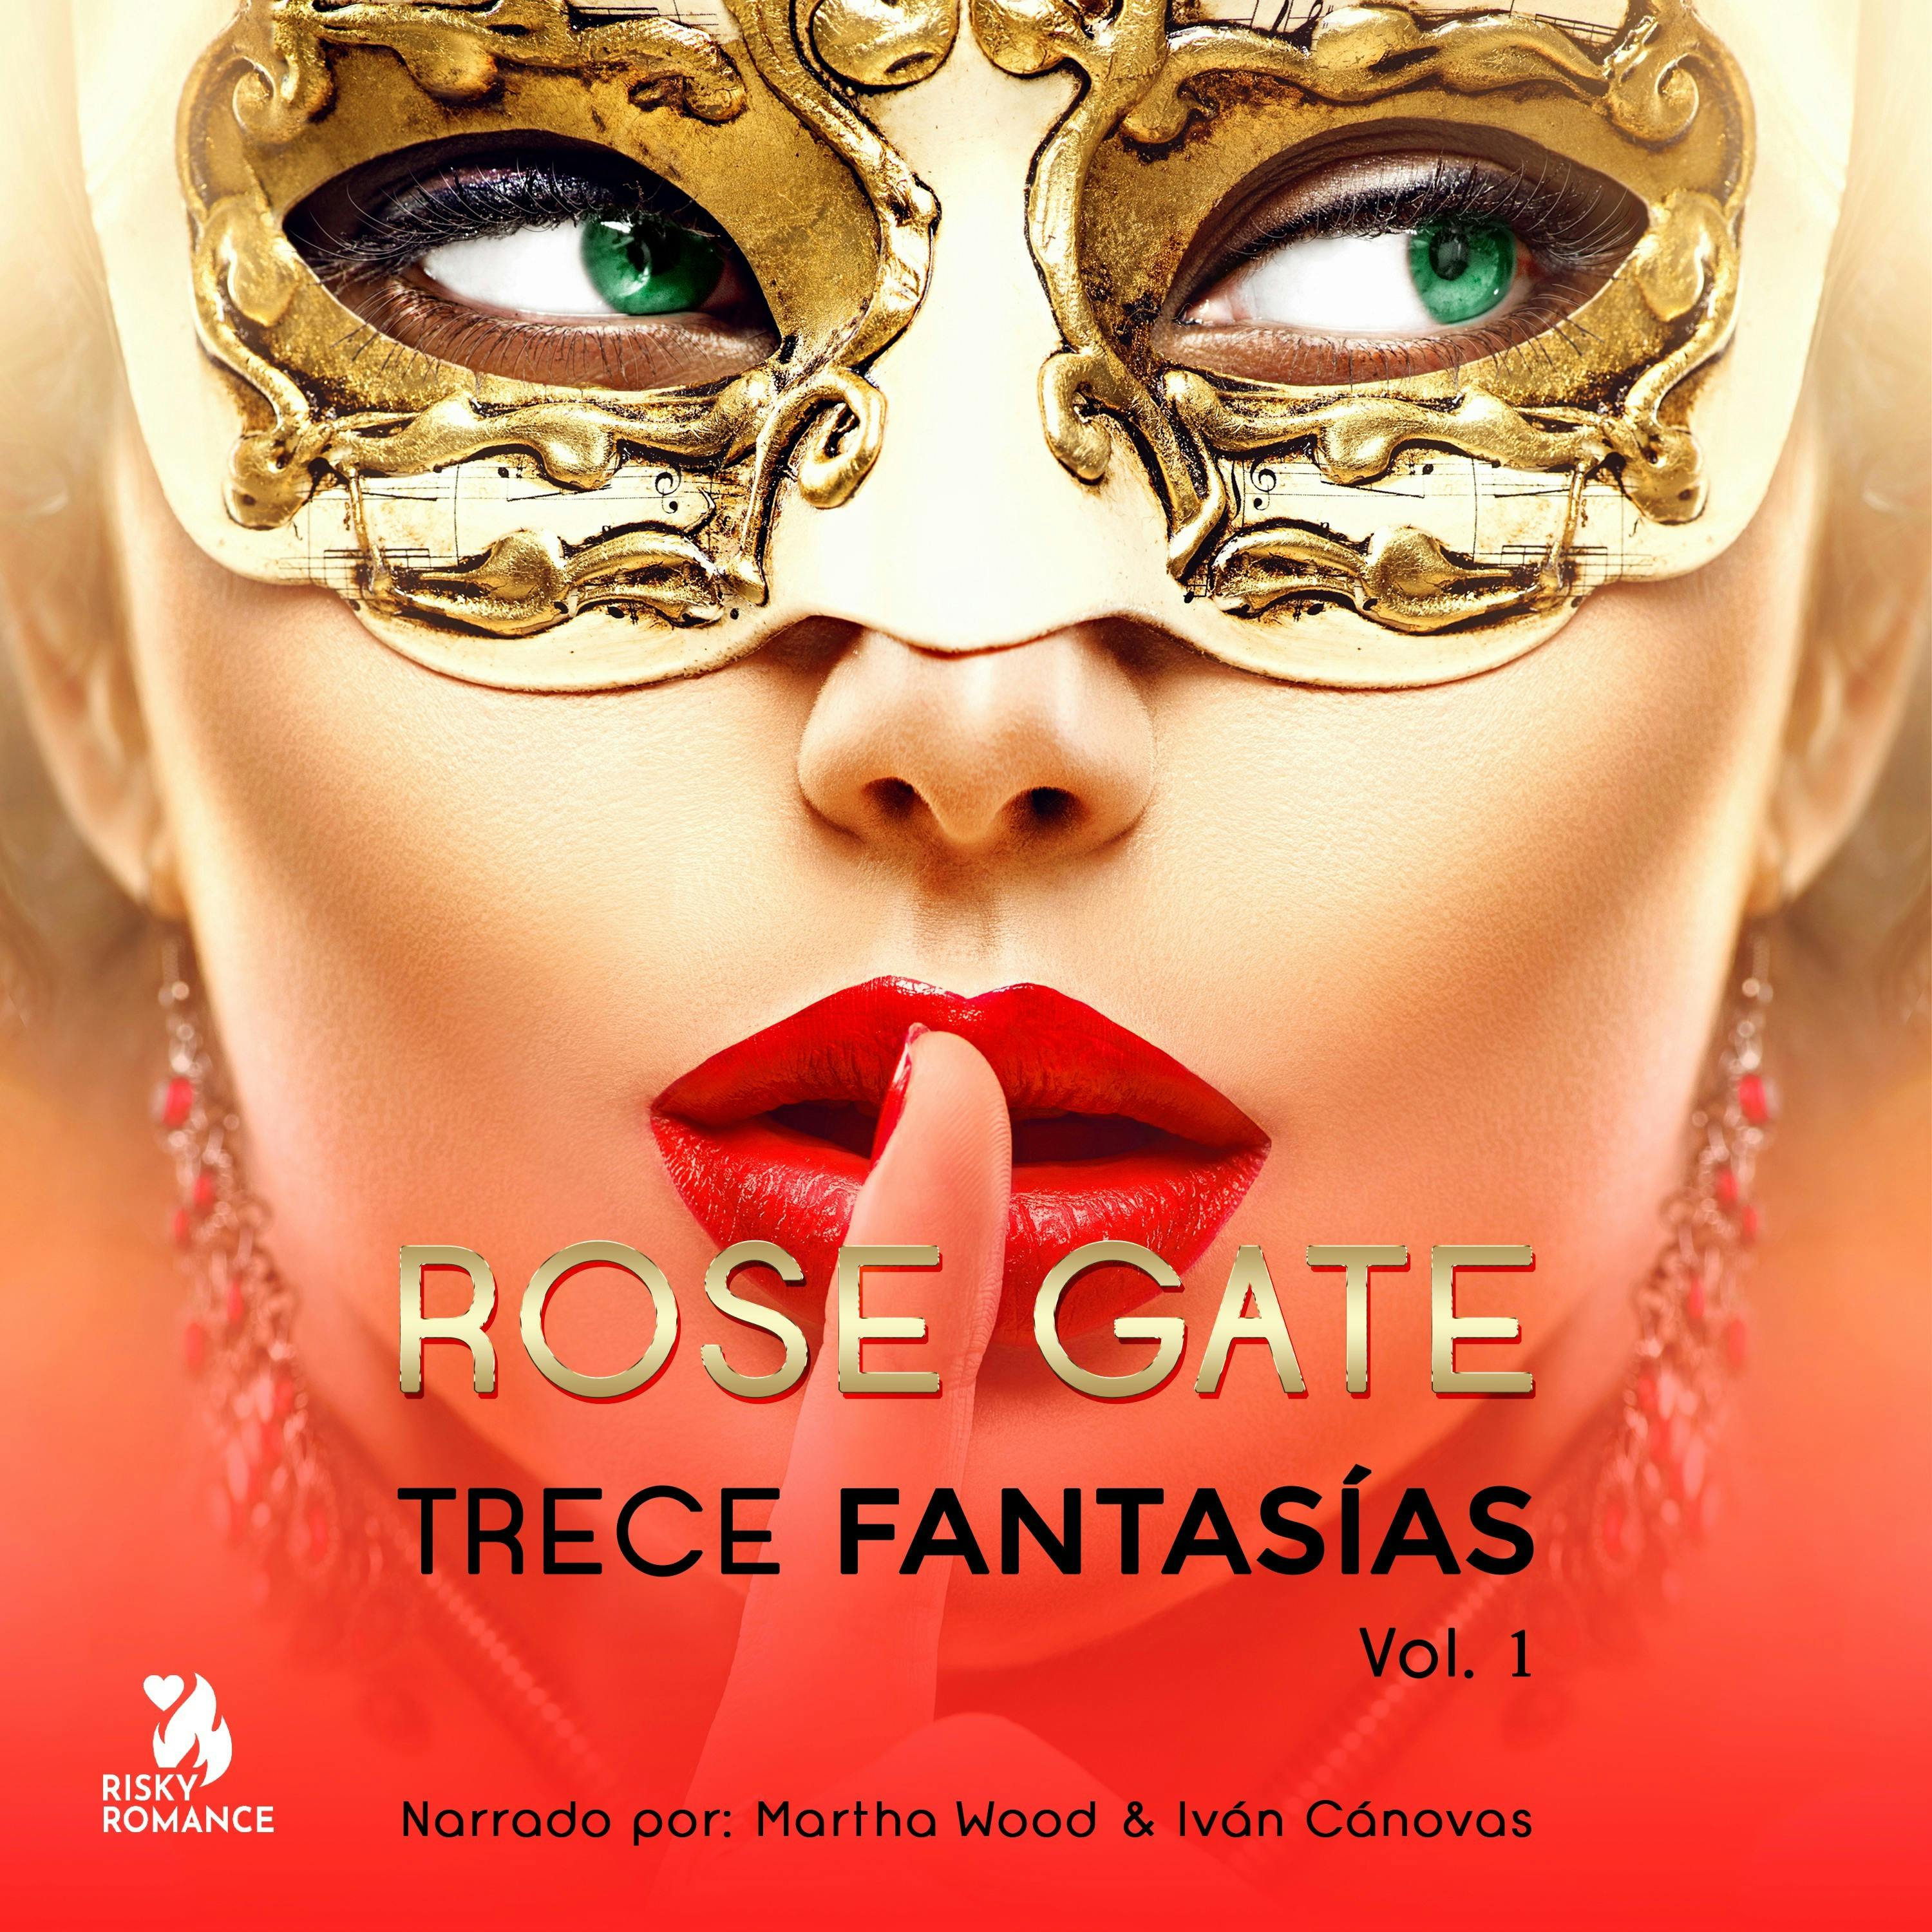 Trece fantasías, Vol. 1 - Rose Gate